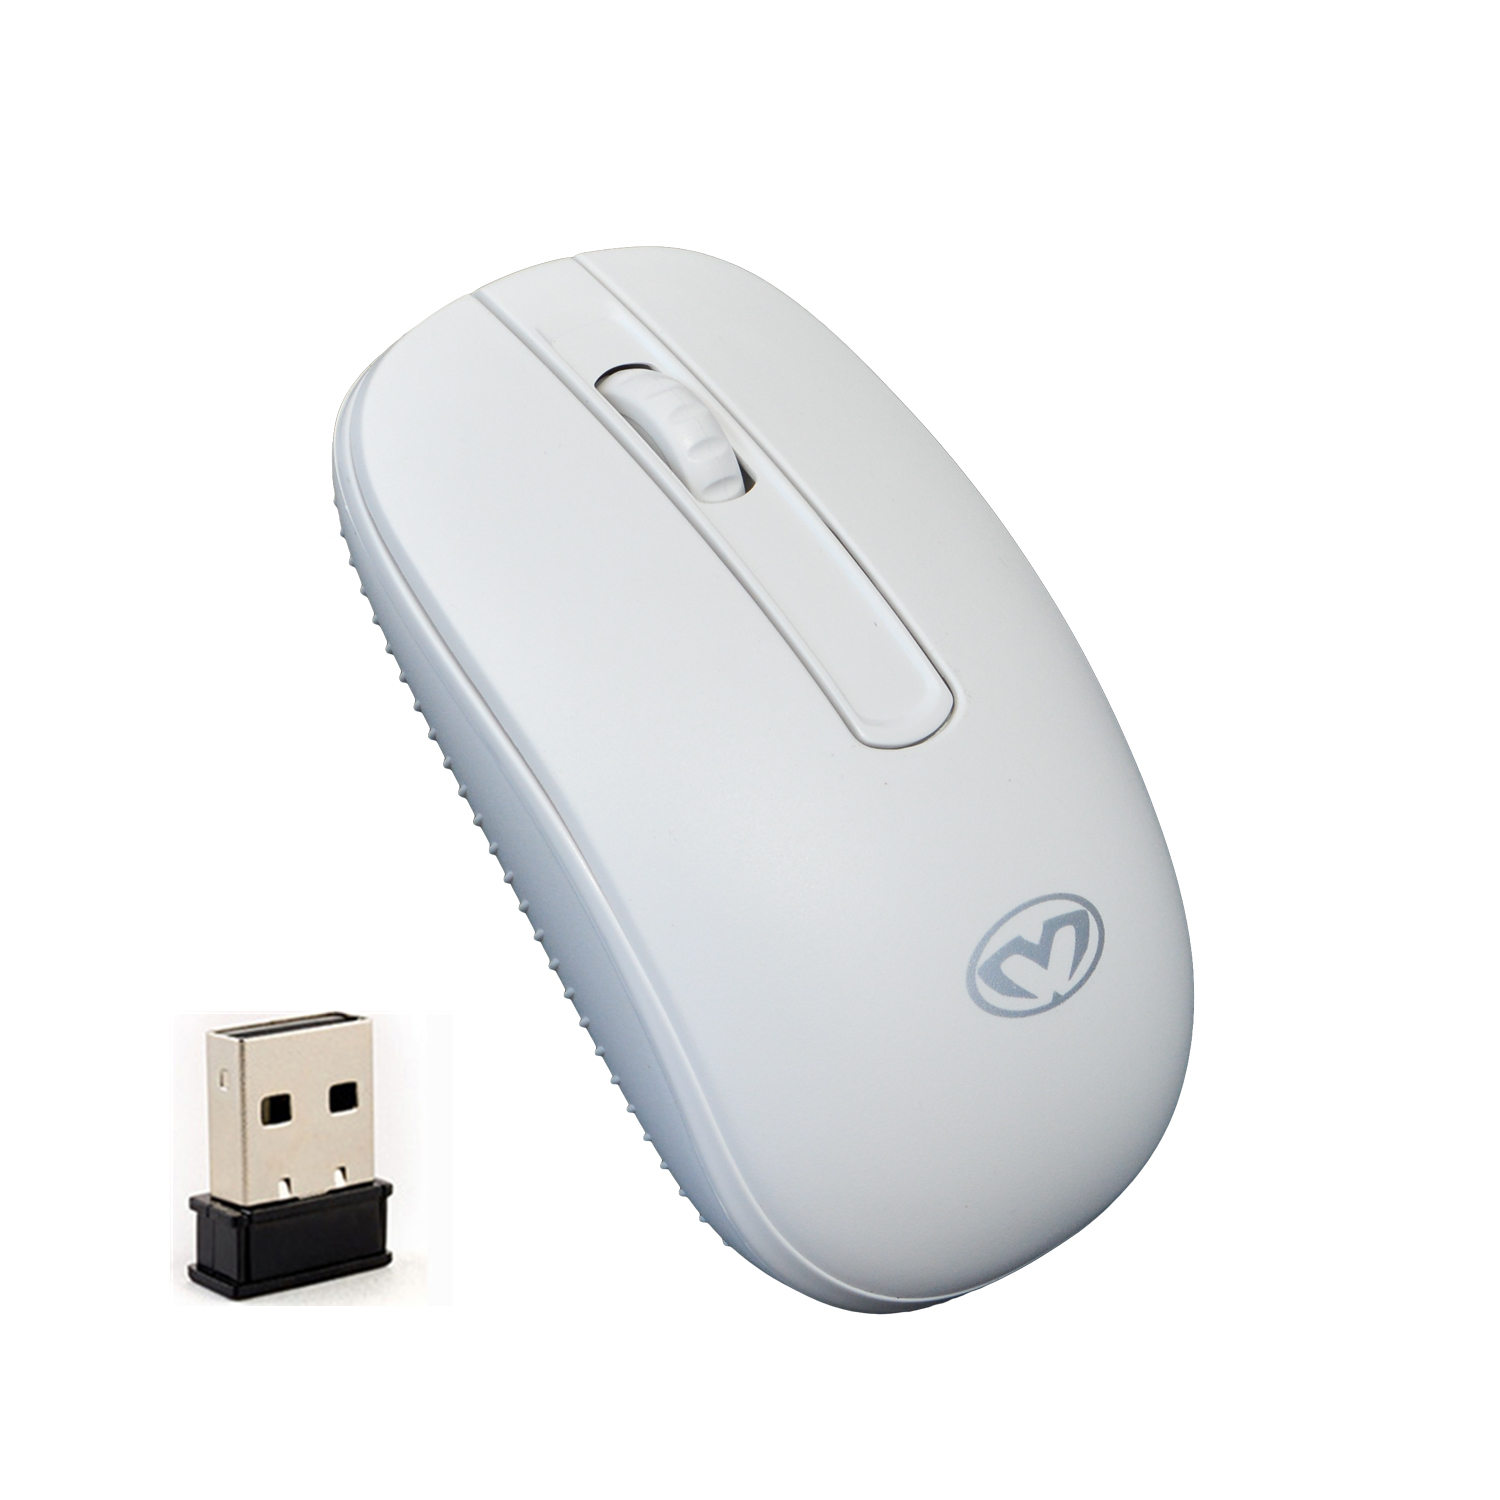 帝猫BW100白色无线鼠标 办公商务无线鼠标 笔记本无线鼠标带本无线鼠标带电池